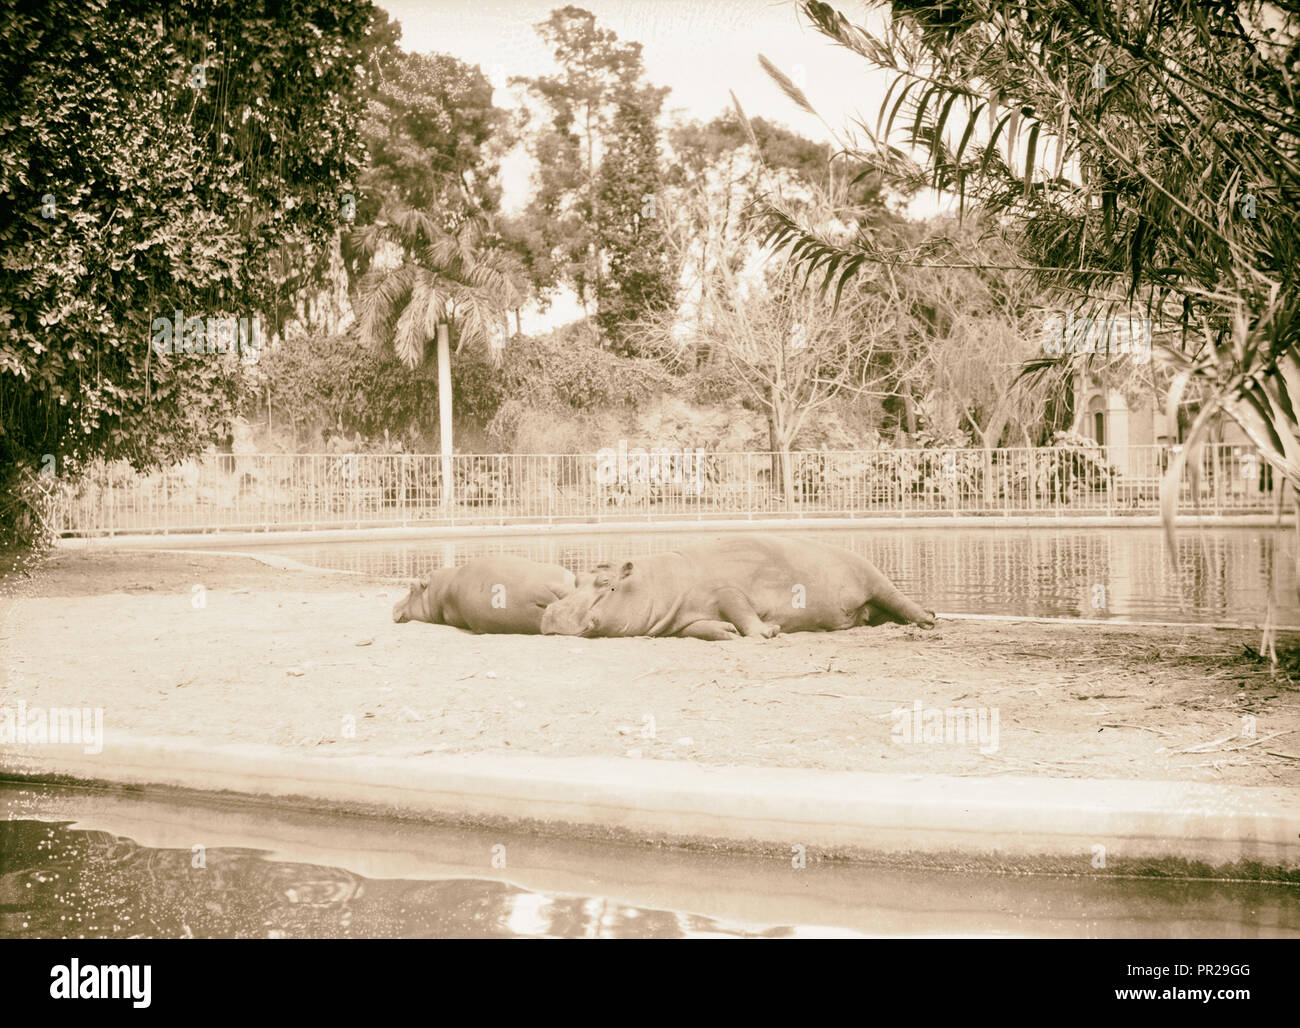 L'Égypte. Le Caire. Jardins zoologiques. Hippopotames. 1934, l'Égypte, Le Caire Banque D'Images